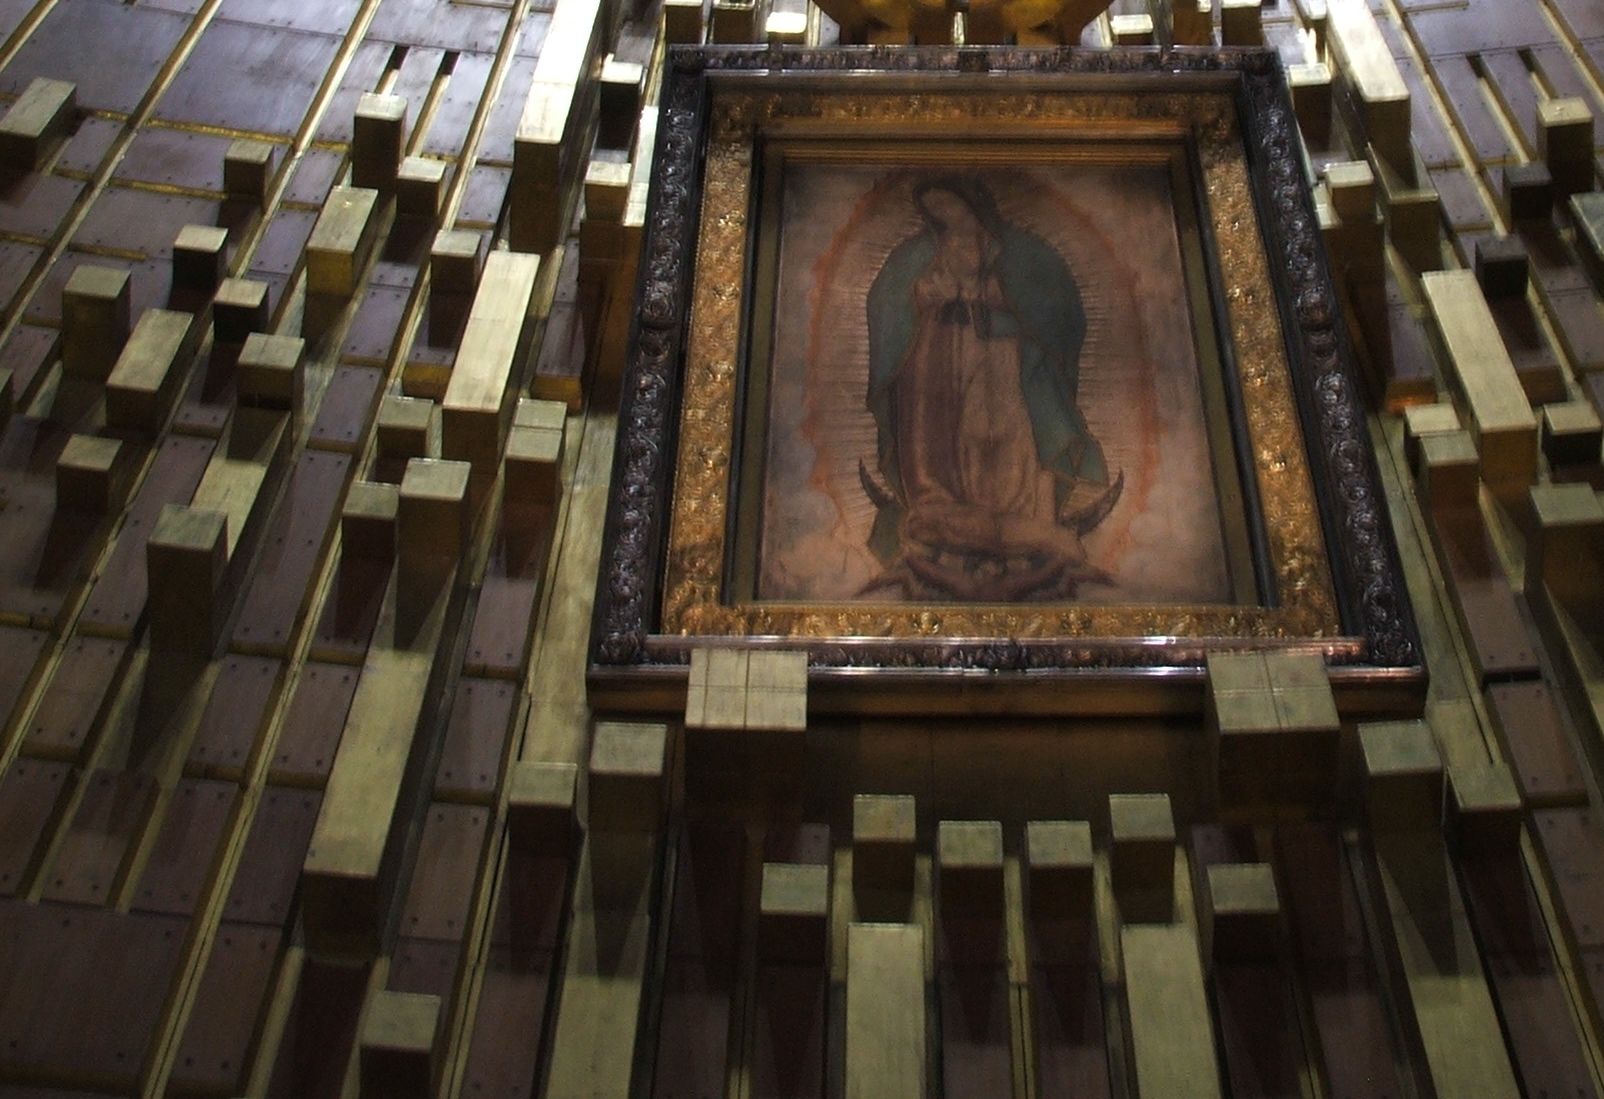 La Asombrosa Música Oculta en el Manto de la Virgen de Guadalupe